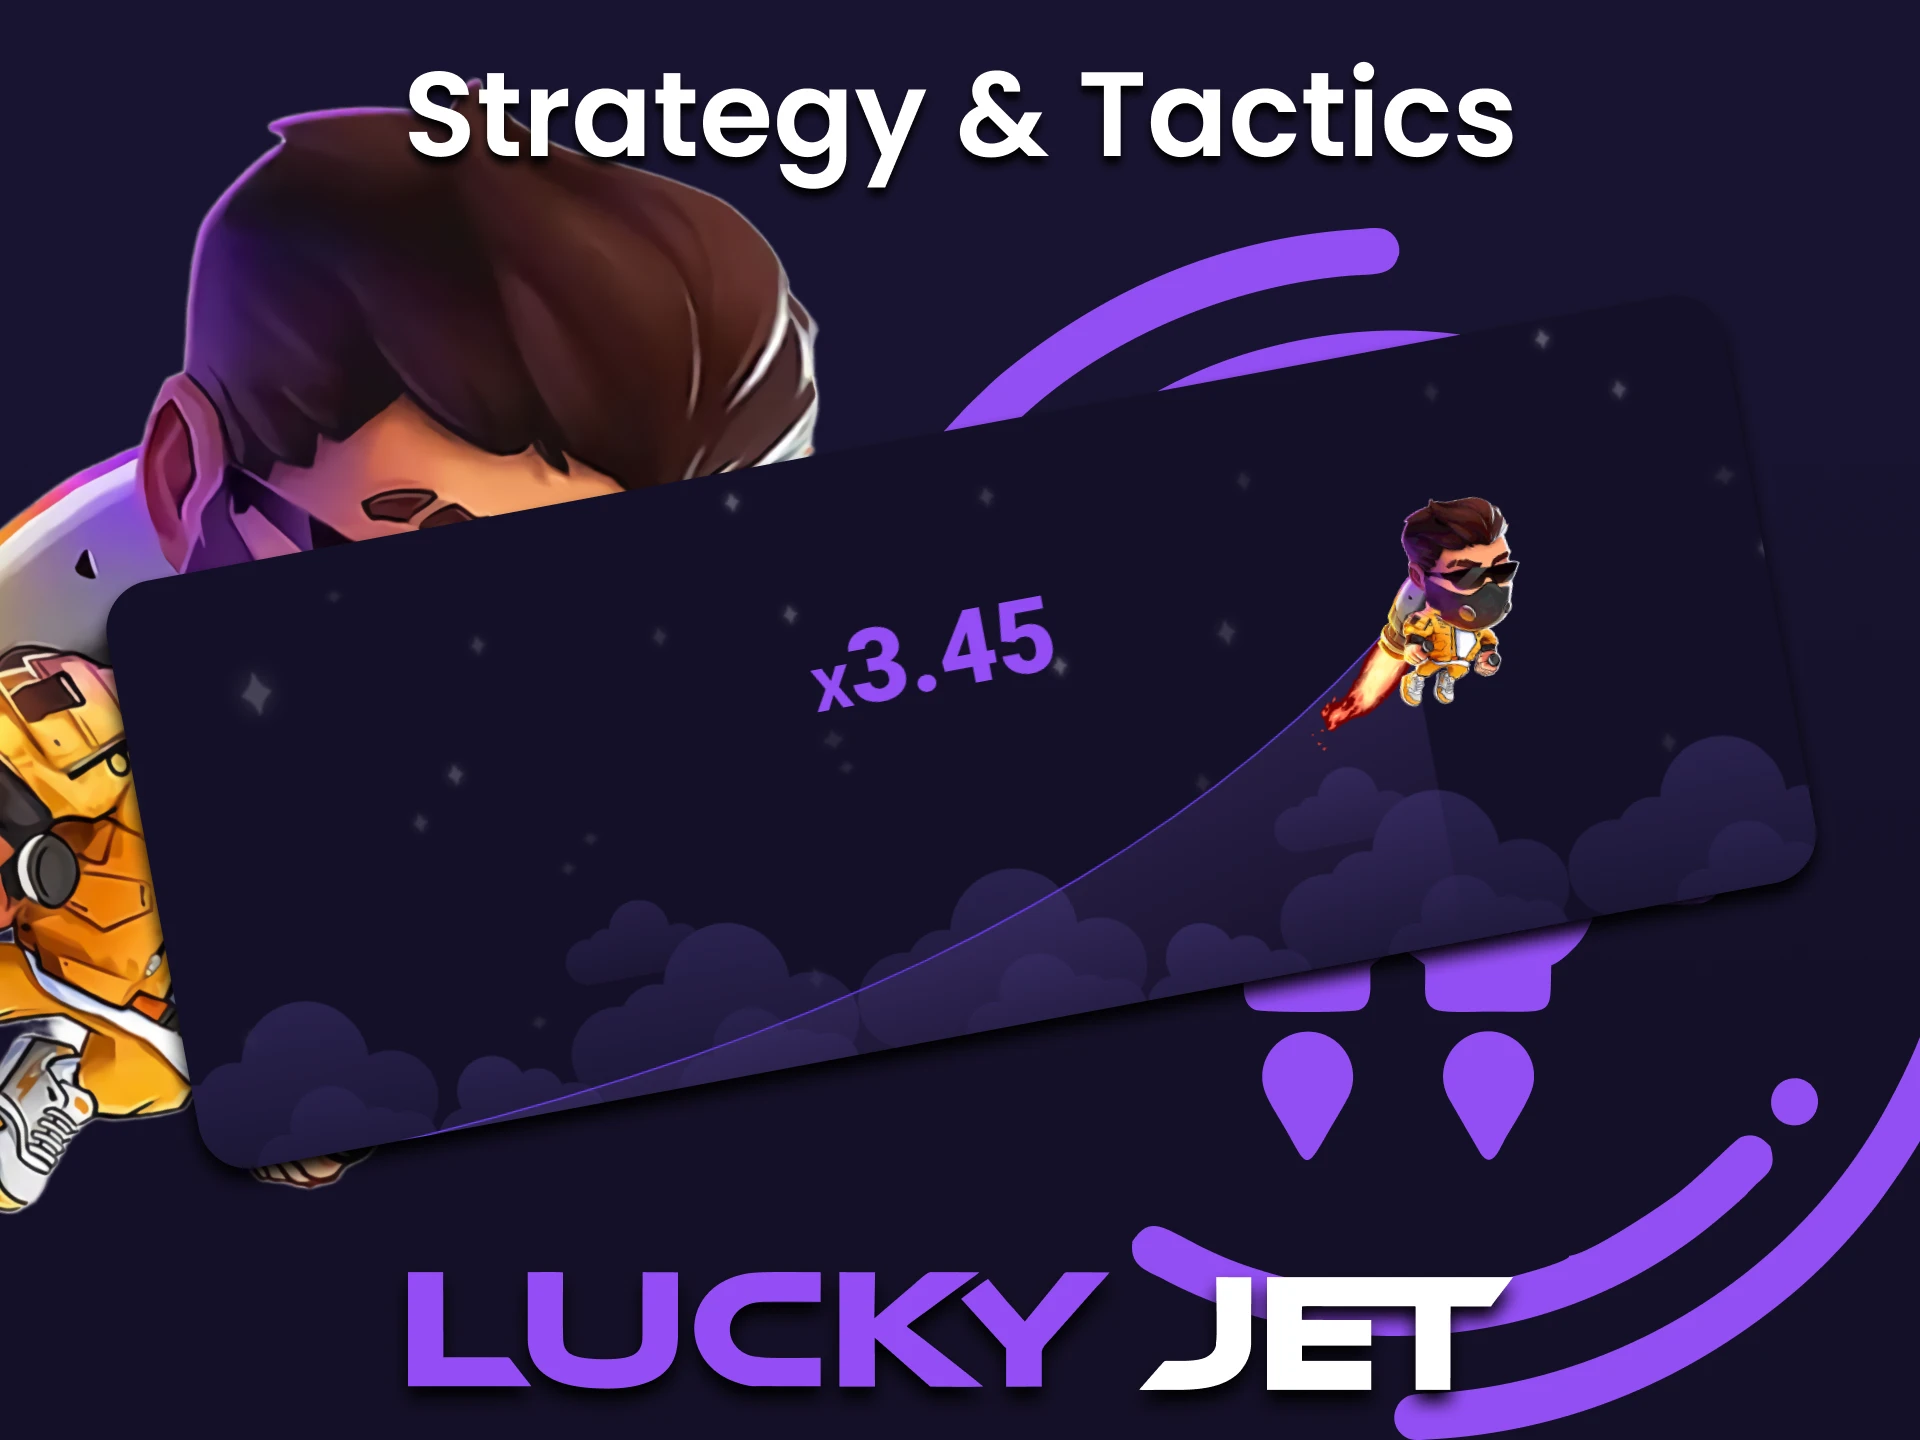 Aplica estrategias y trucos para aumentar tus posibilidades de ganar en el juego Lucky Jet.